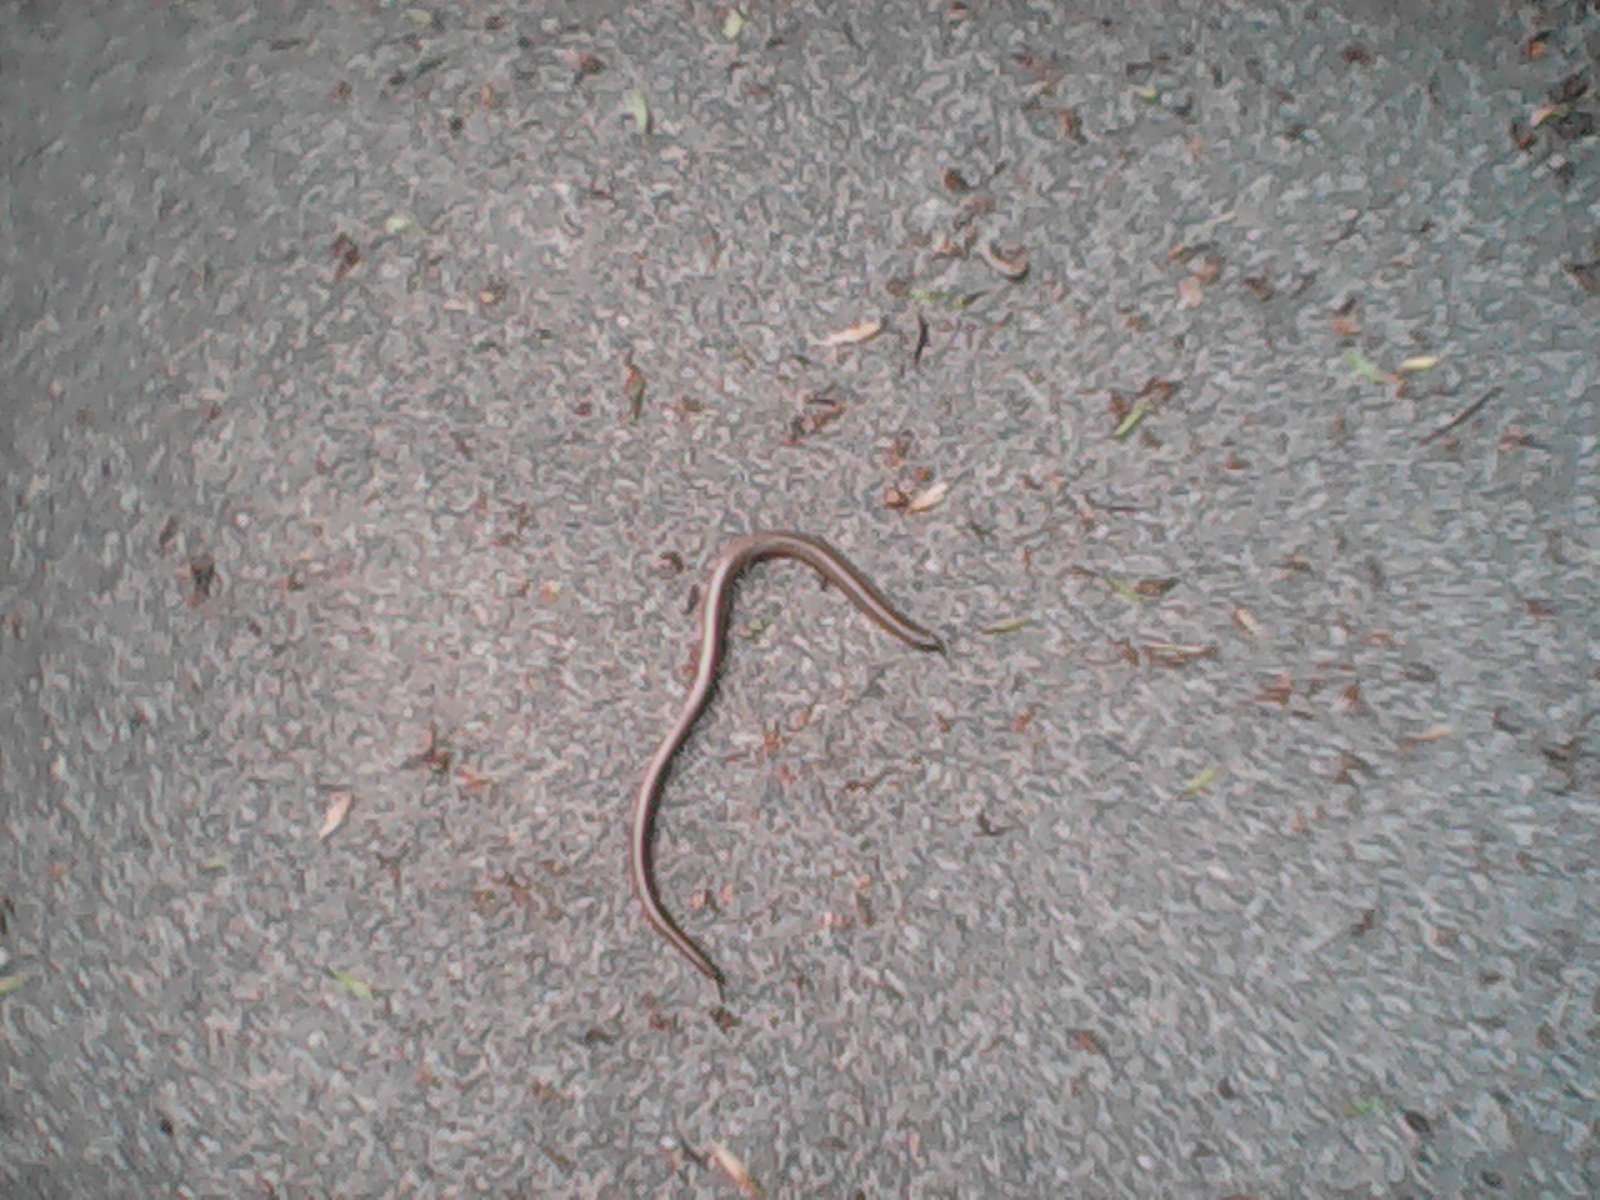 A small snake on the asphalt of an street.